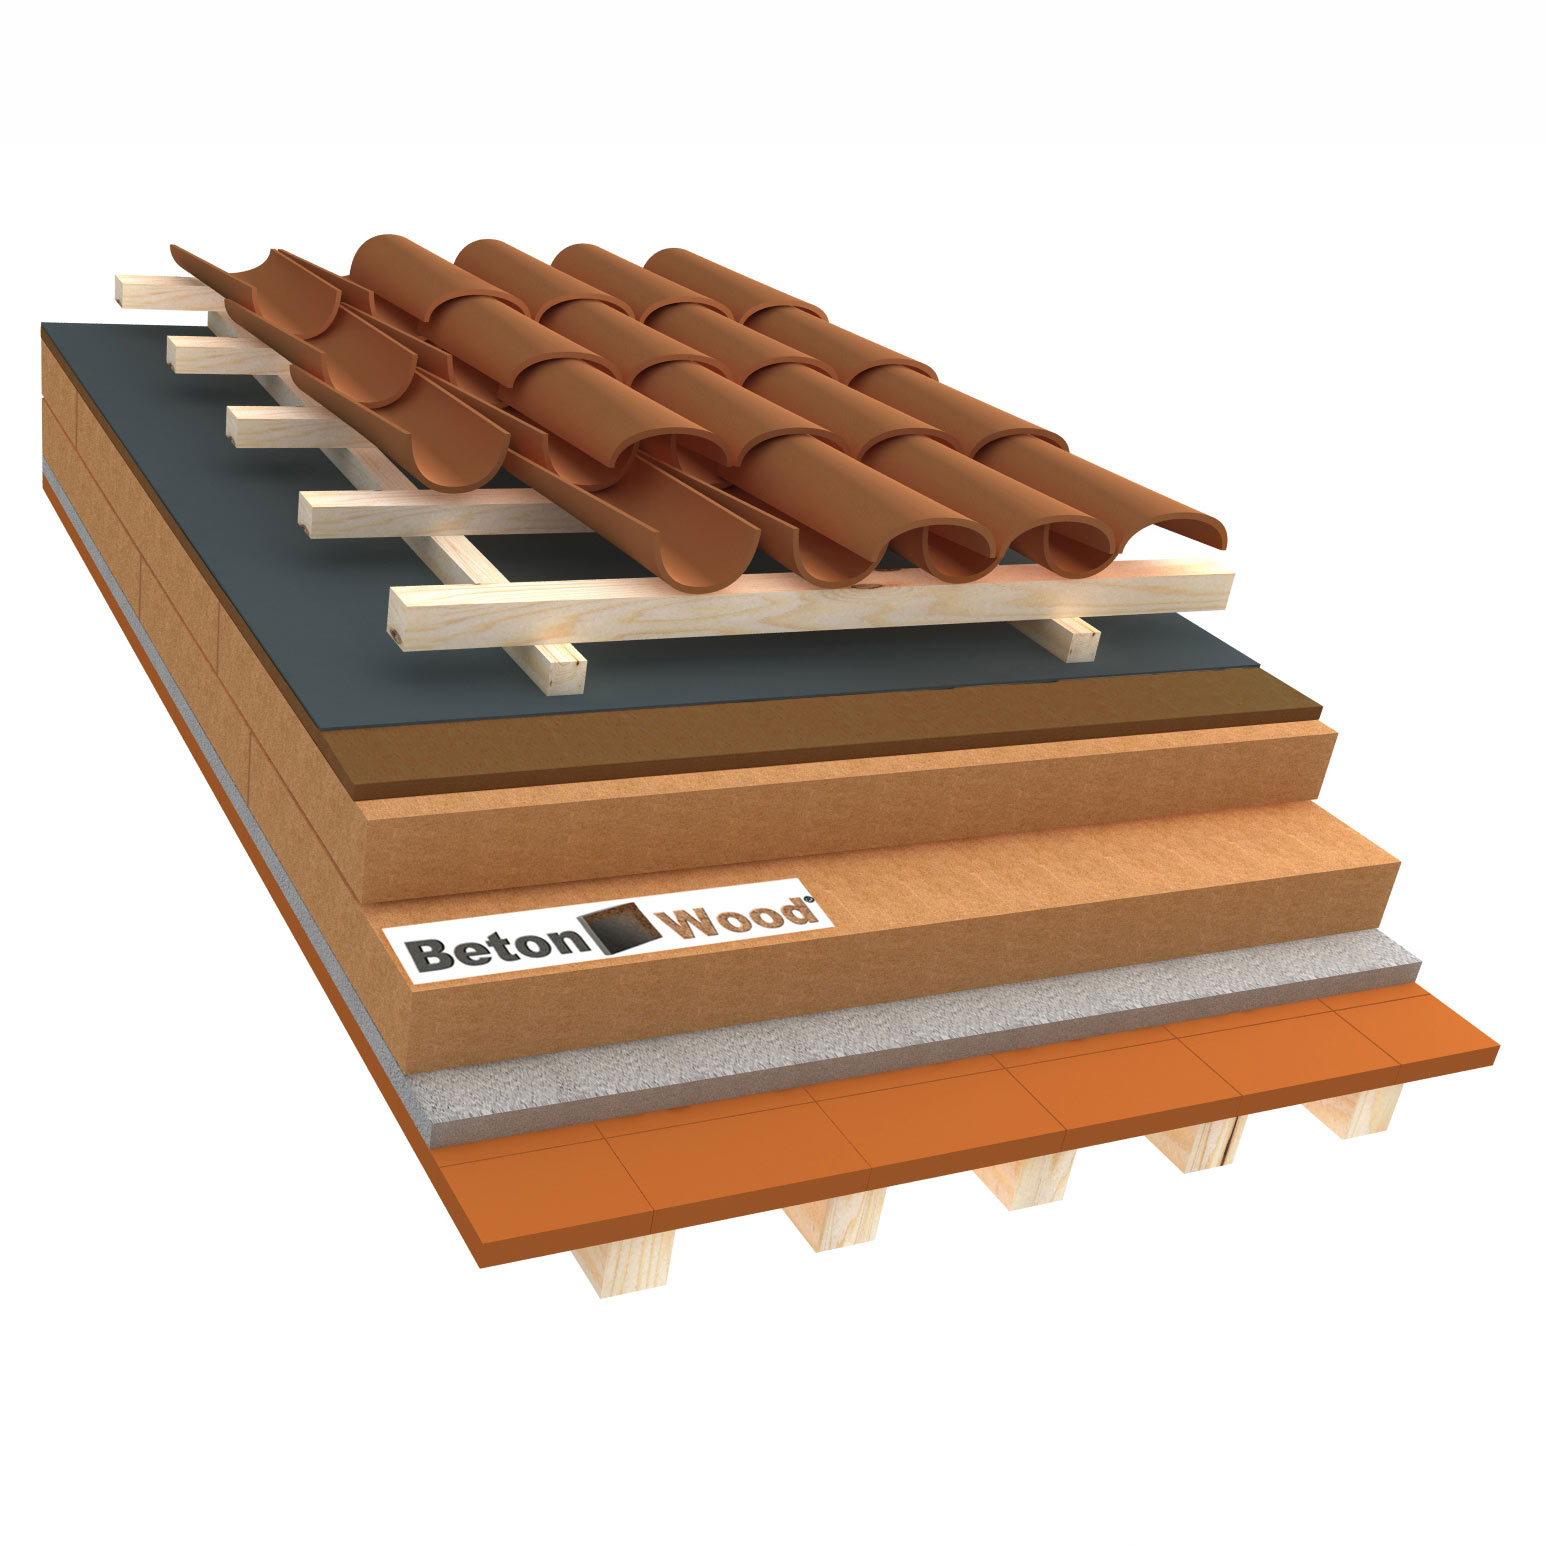 Sistema tetto E fibra di legno therm e bitumfiber